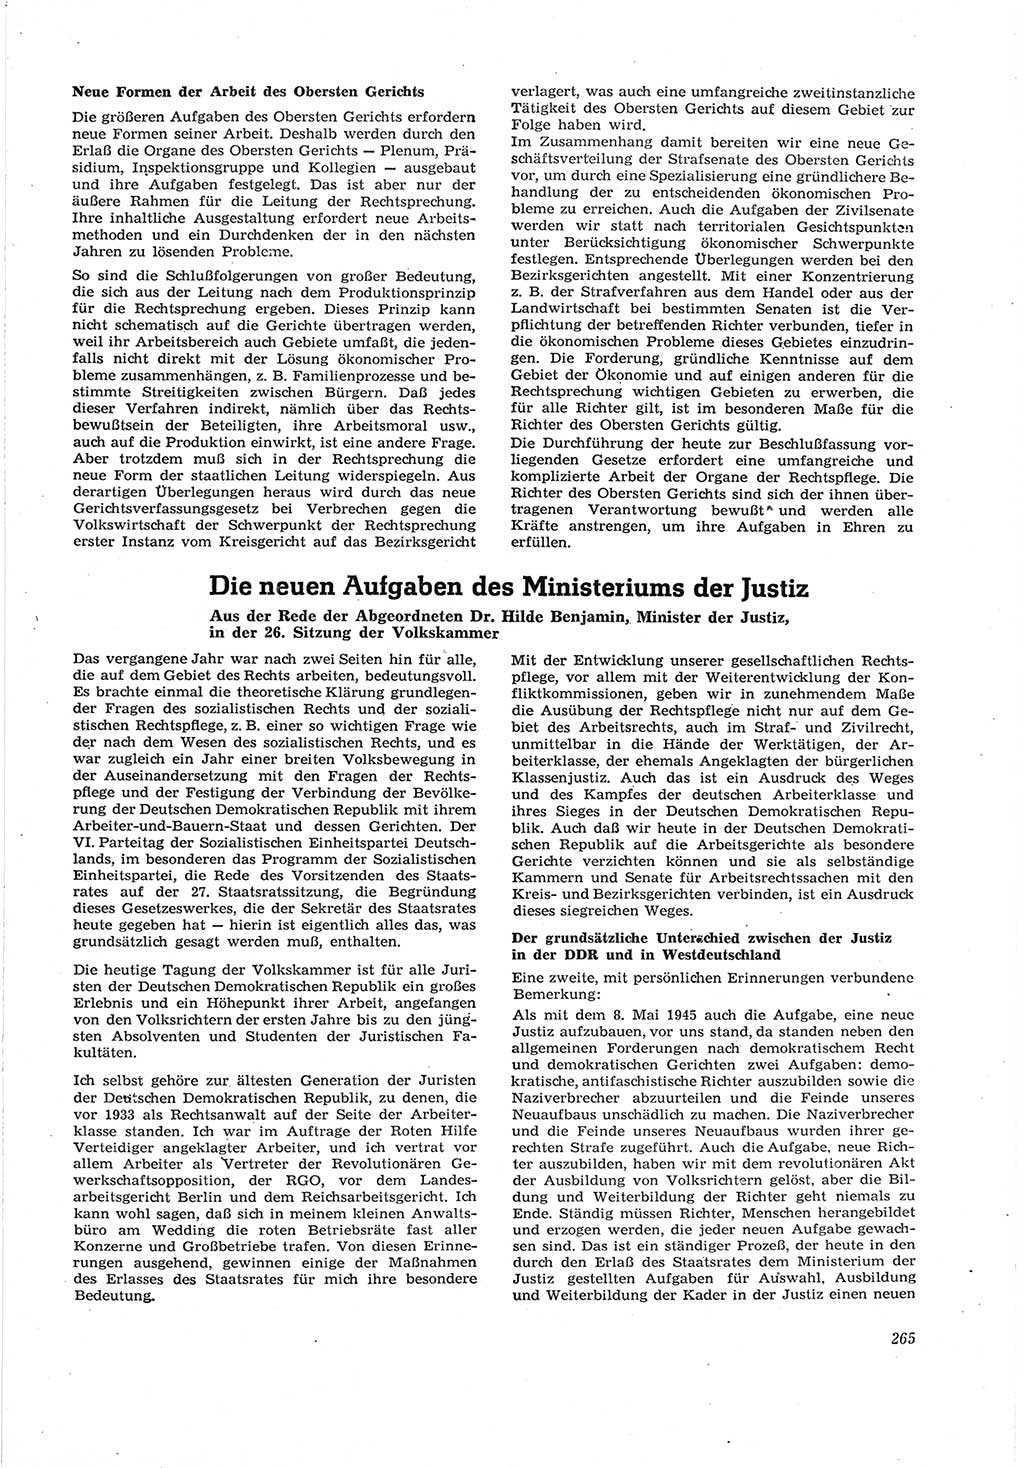 Neue Justiz (NJ), Zeitschrift für Recht und Rechtswissenschaft [Deutsche Demokratische Republik (DDR)], 17. Jahrgang 1963, Seite 265 (NJ DDR 1963, S. 265)